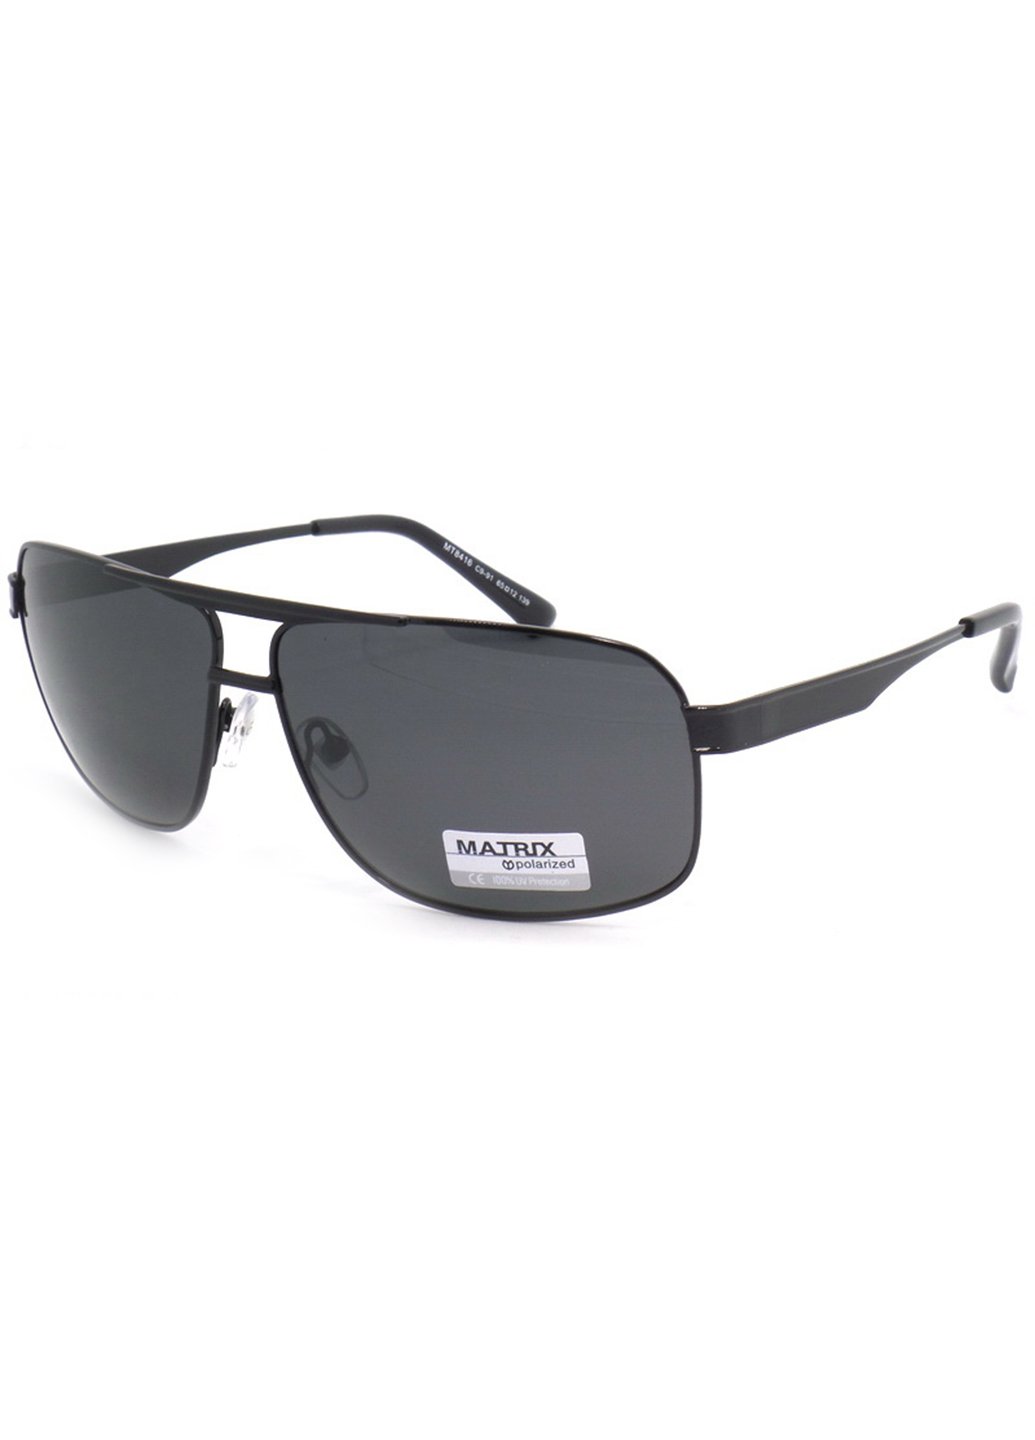 Купить Черные мужские солнцезащитные очки Matrix с поляризацией MT8416 111018 в интернет-магазине